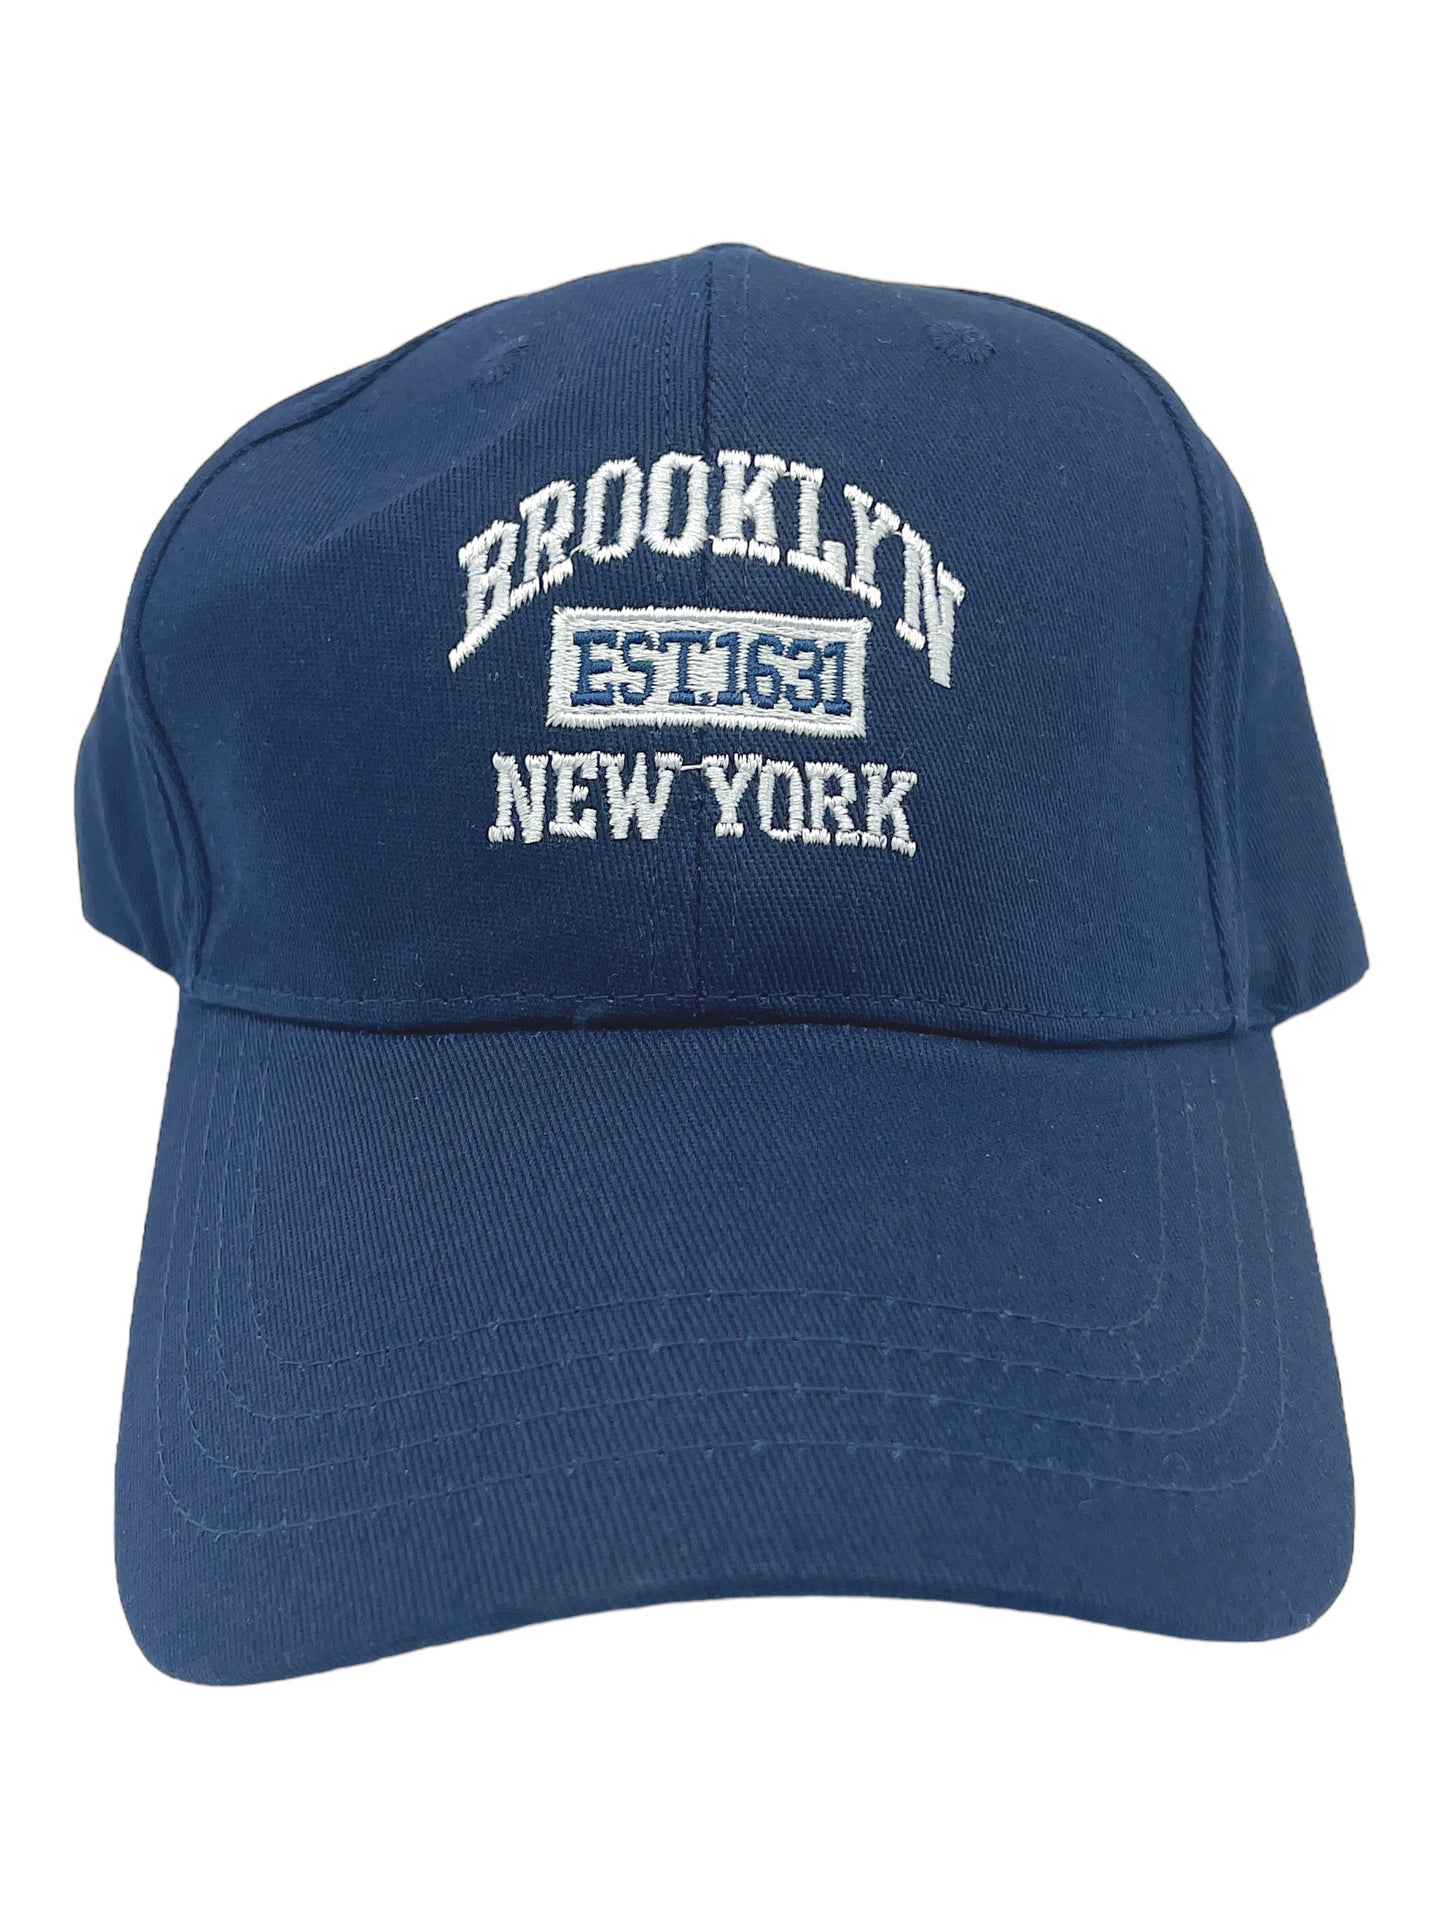 “BROOKLYN, NEW YORK” Adjustable Dad Cap